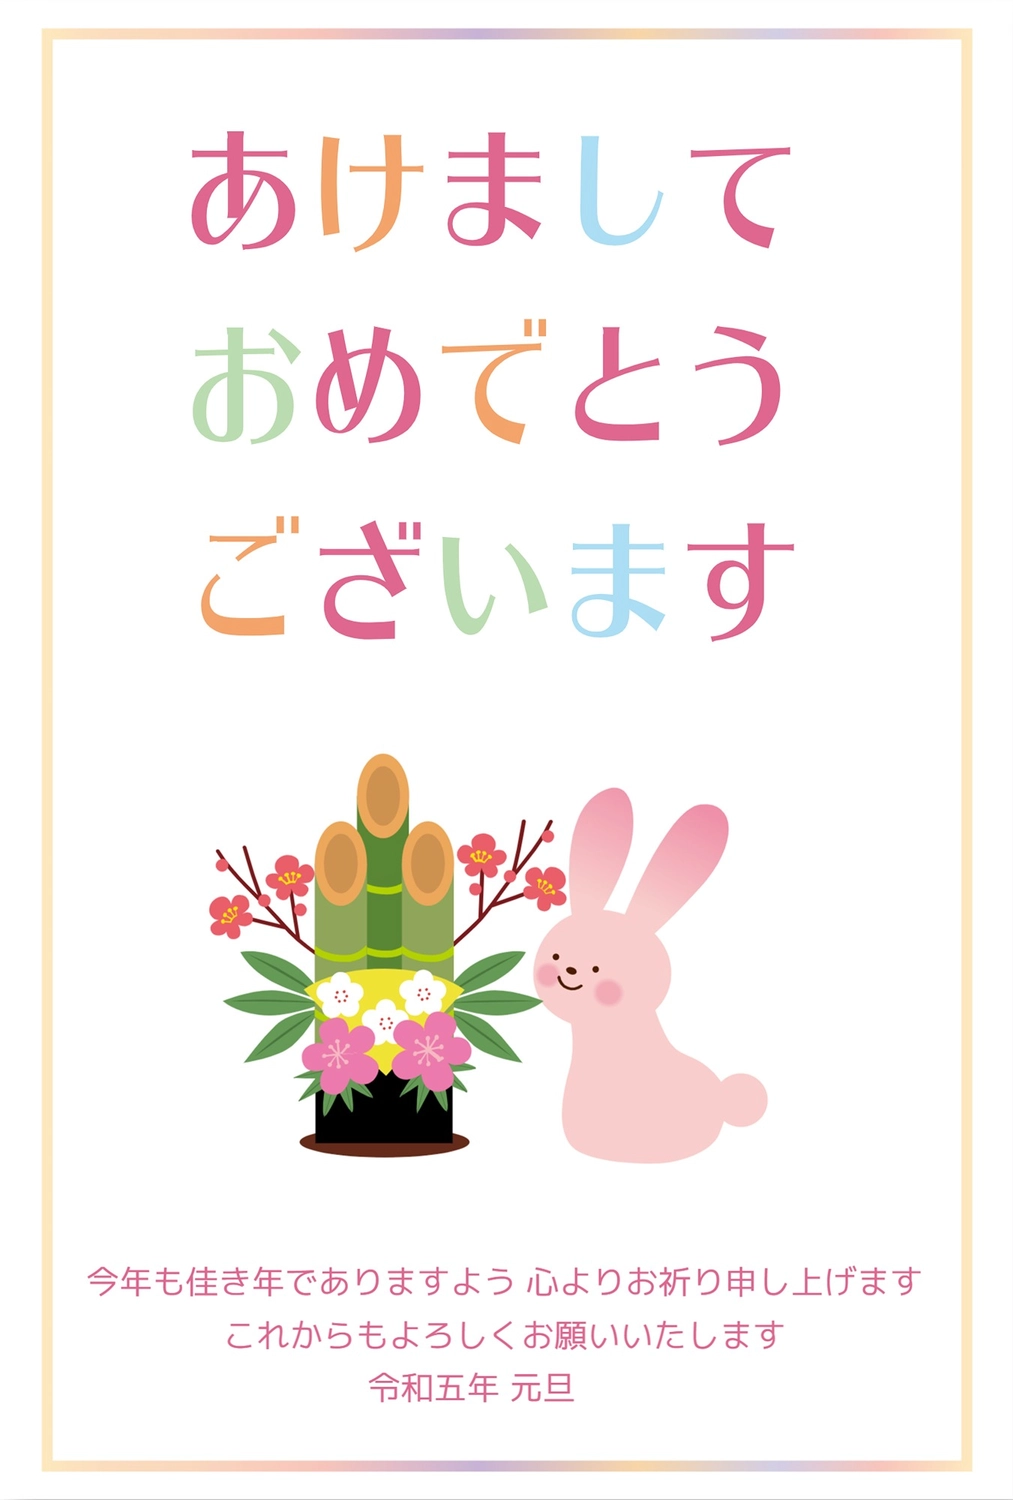 ピンクのウサギと門松, 연하장, 令和, ラビット, 새해 카드 템플릿